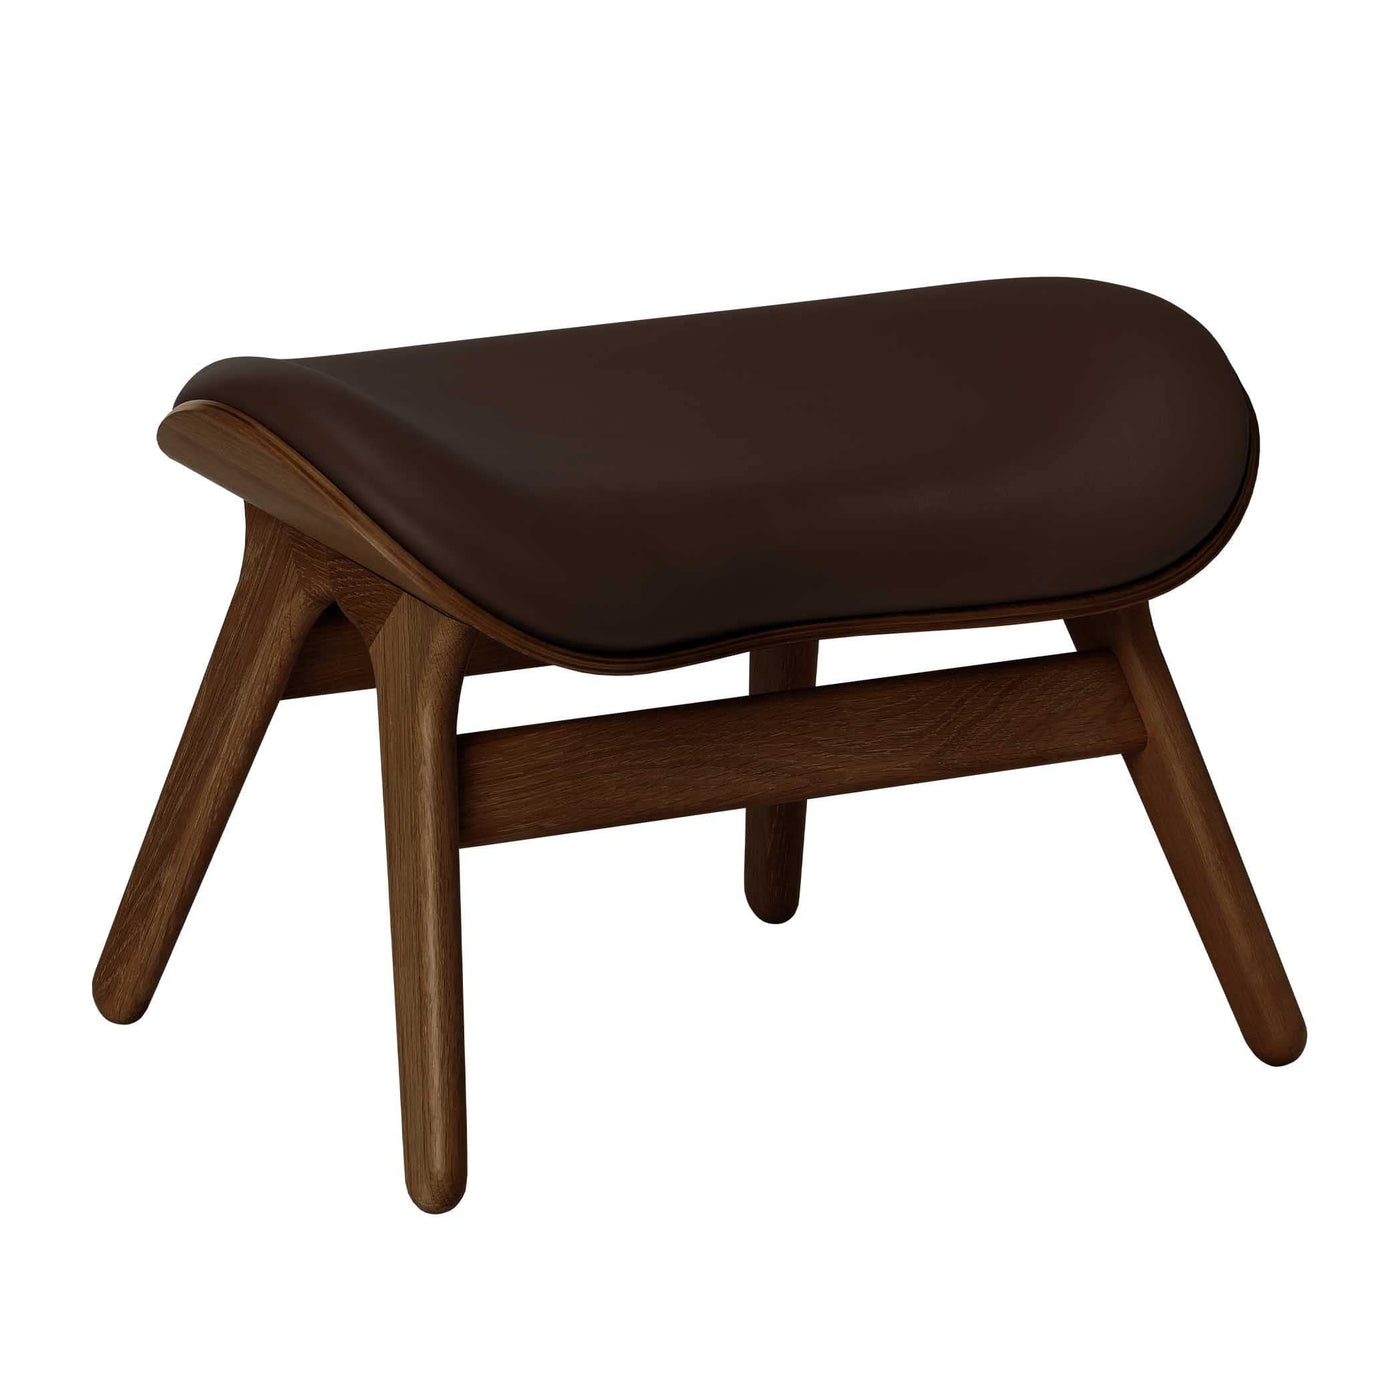 Umage A Conversation Piece, ottoman pour accompagner le fauteuil, en bois et polyester, cuir brun, chêne foncé